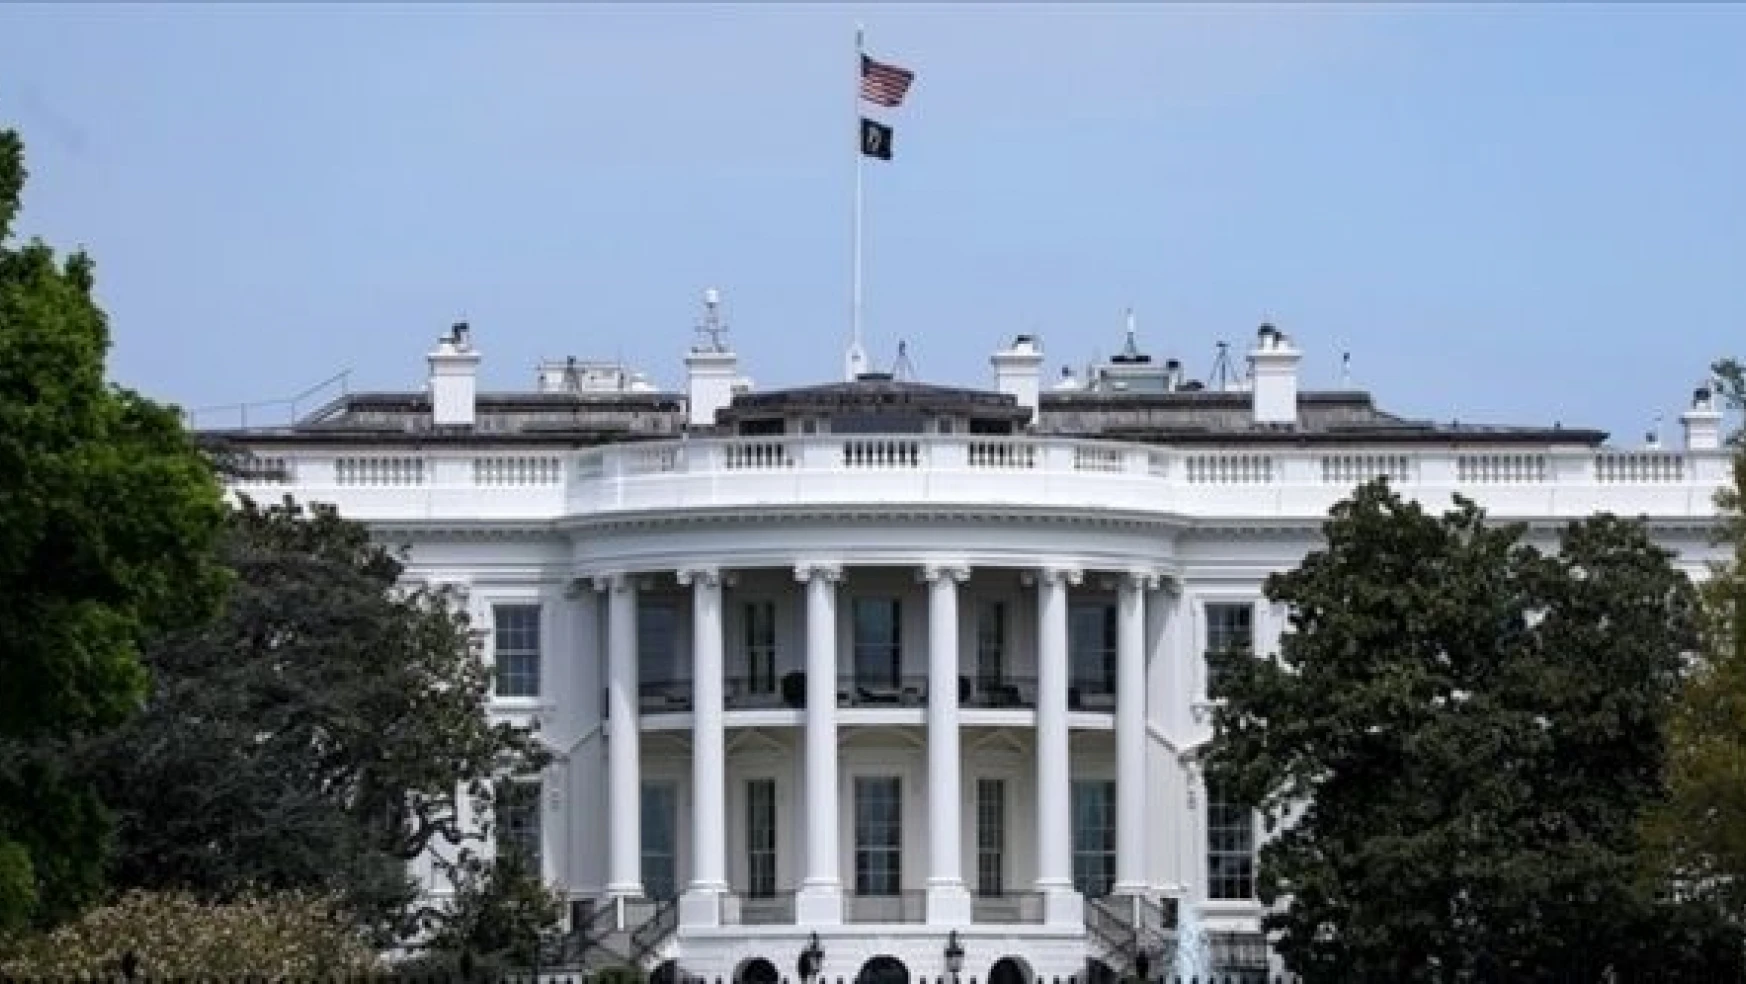 Beyaz Saray, Kongre'den Ukrayna için 37,7 milyar dolar yardım talep etti